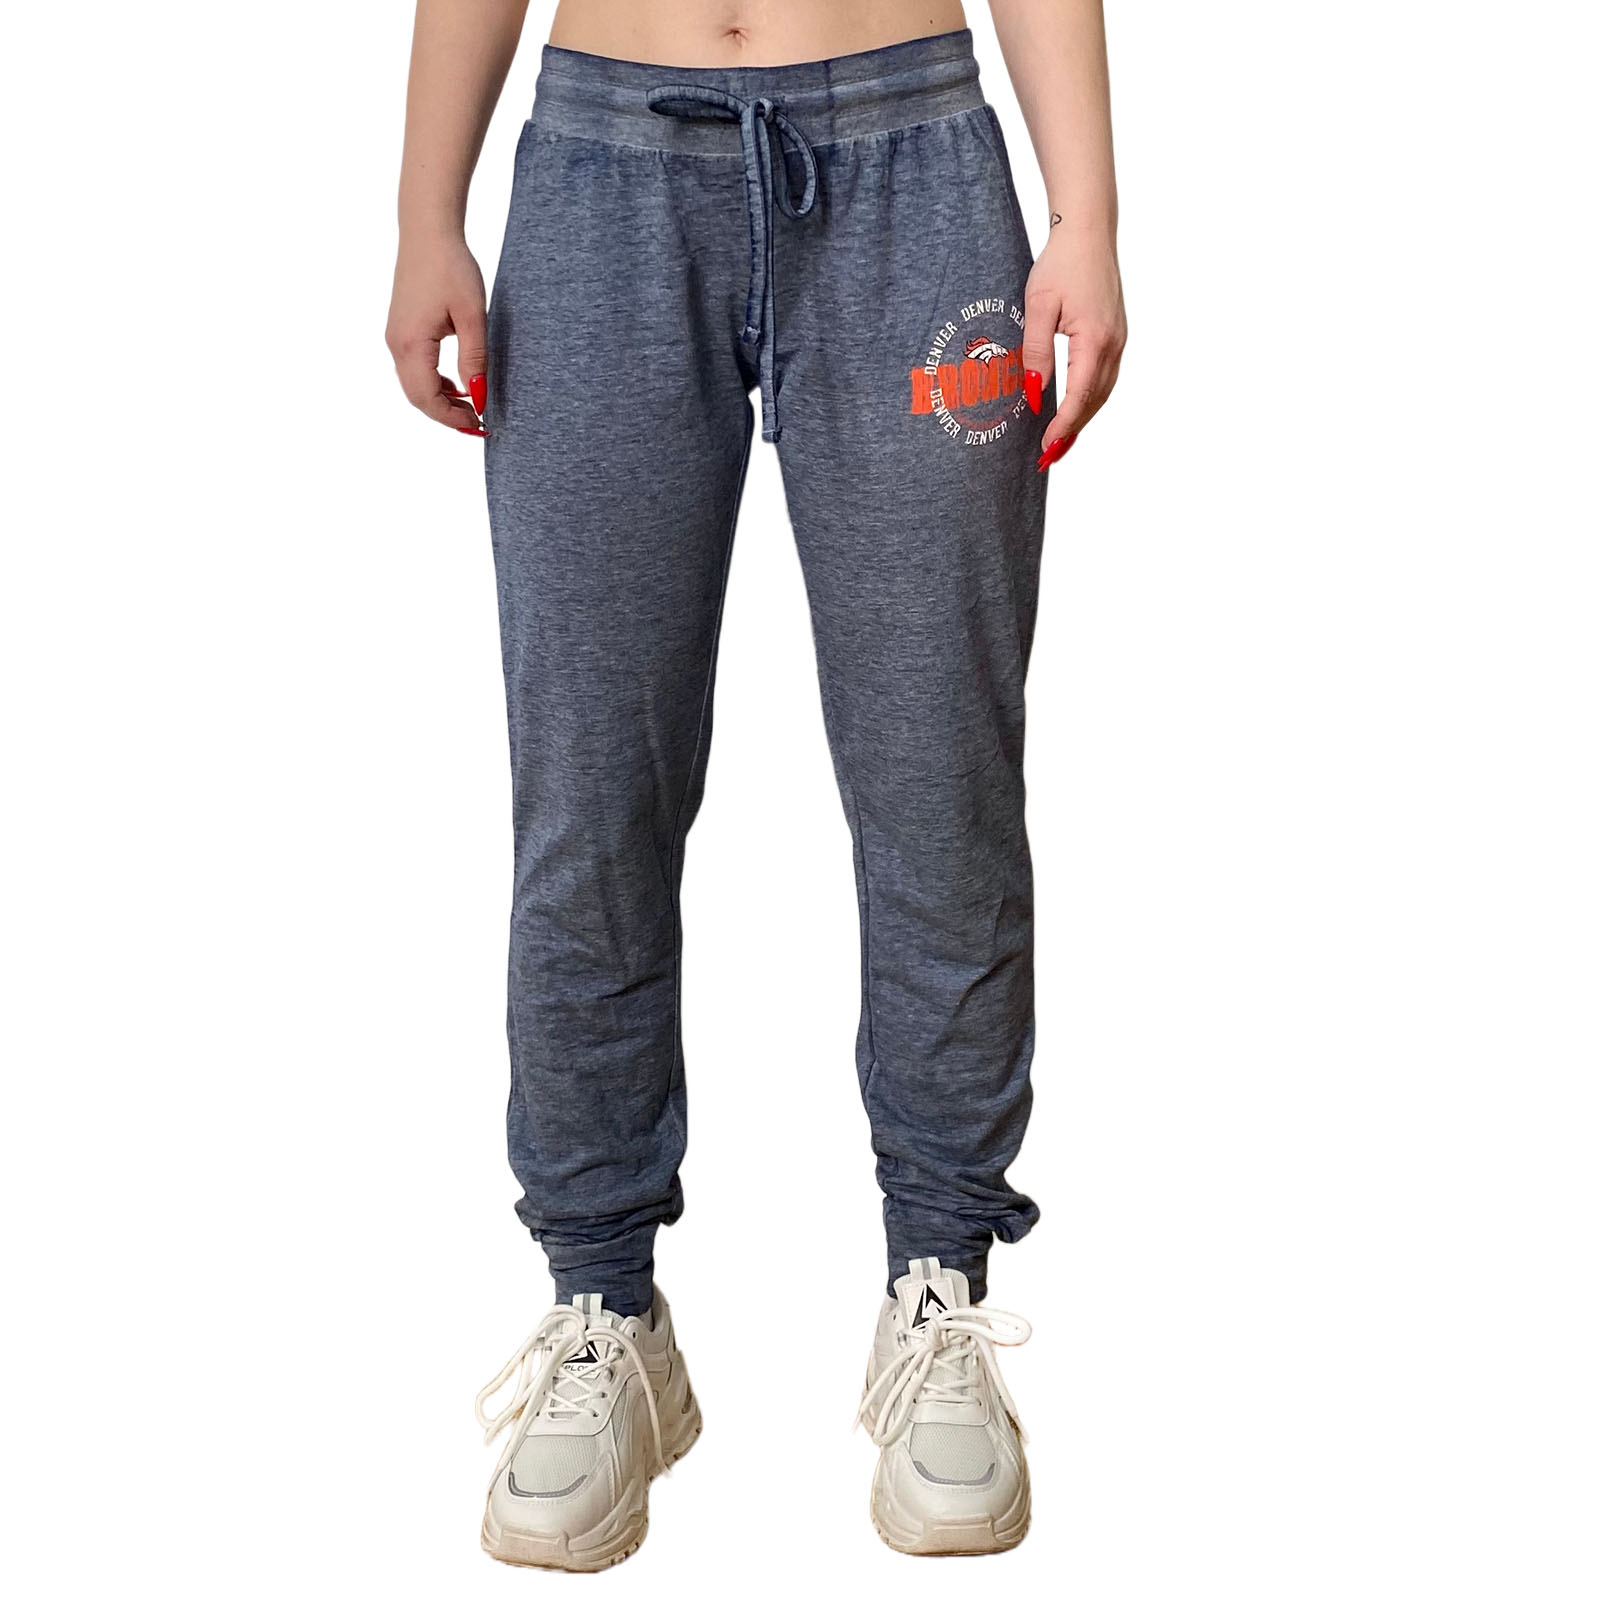 Купить в интернет магазине женские штаны джоггеры